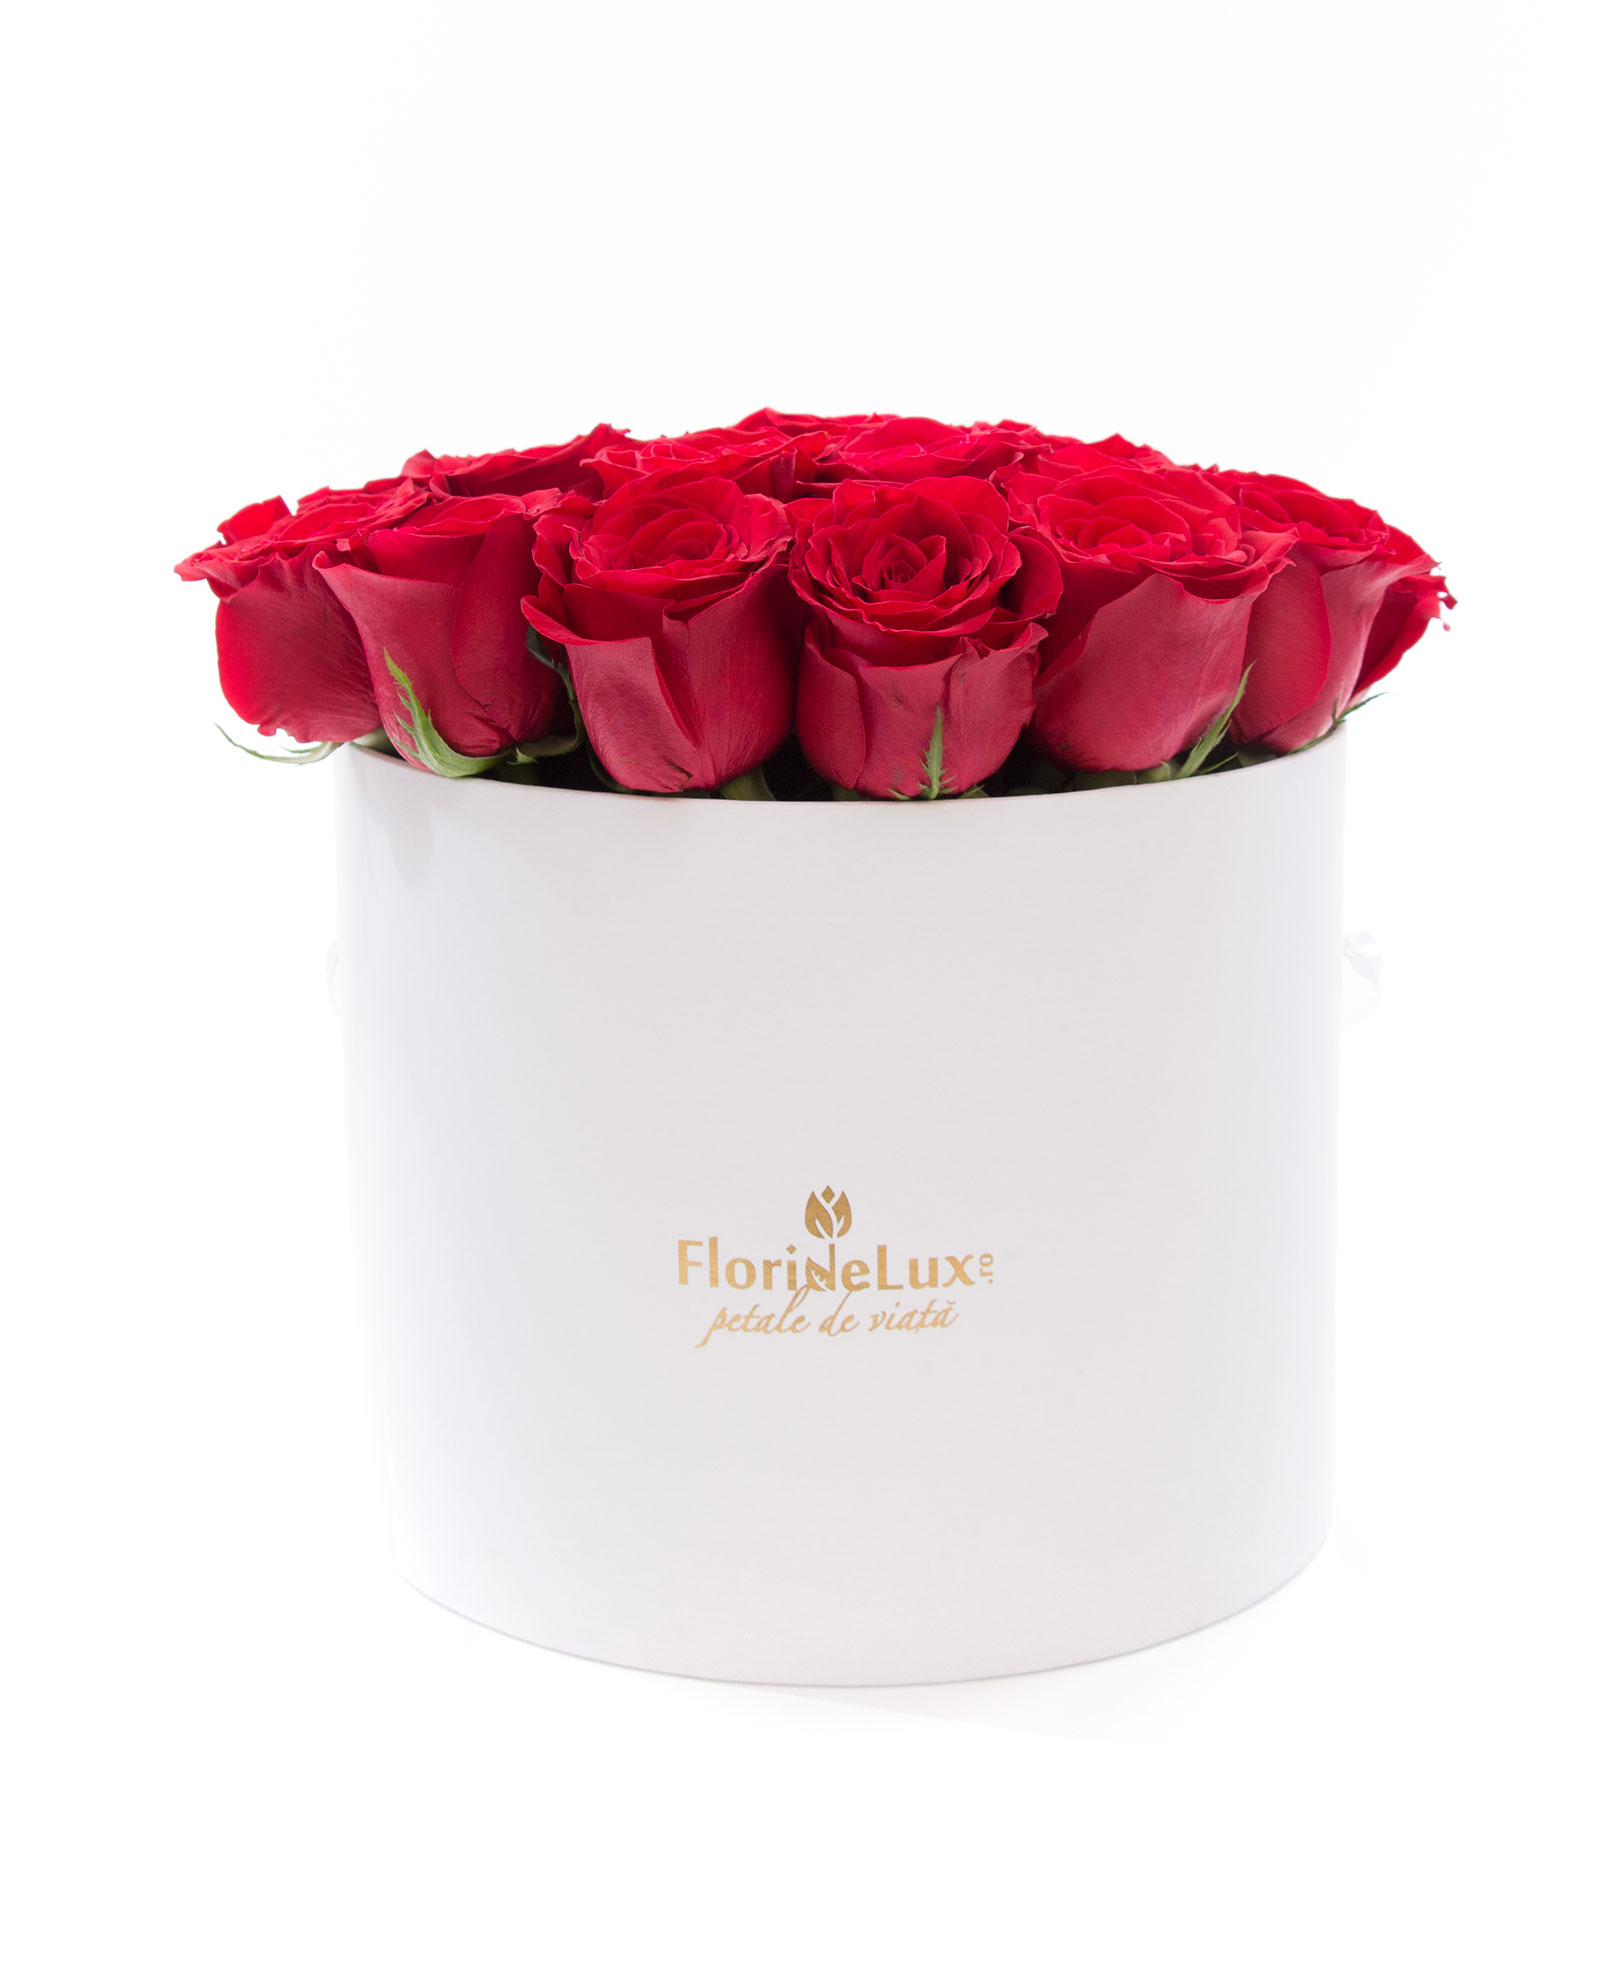 Cutie romantica trandafiri rosii si vin Calem